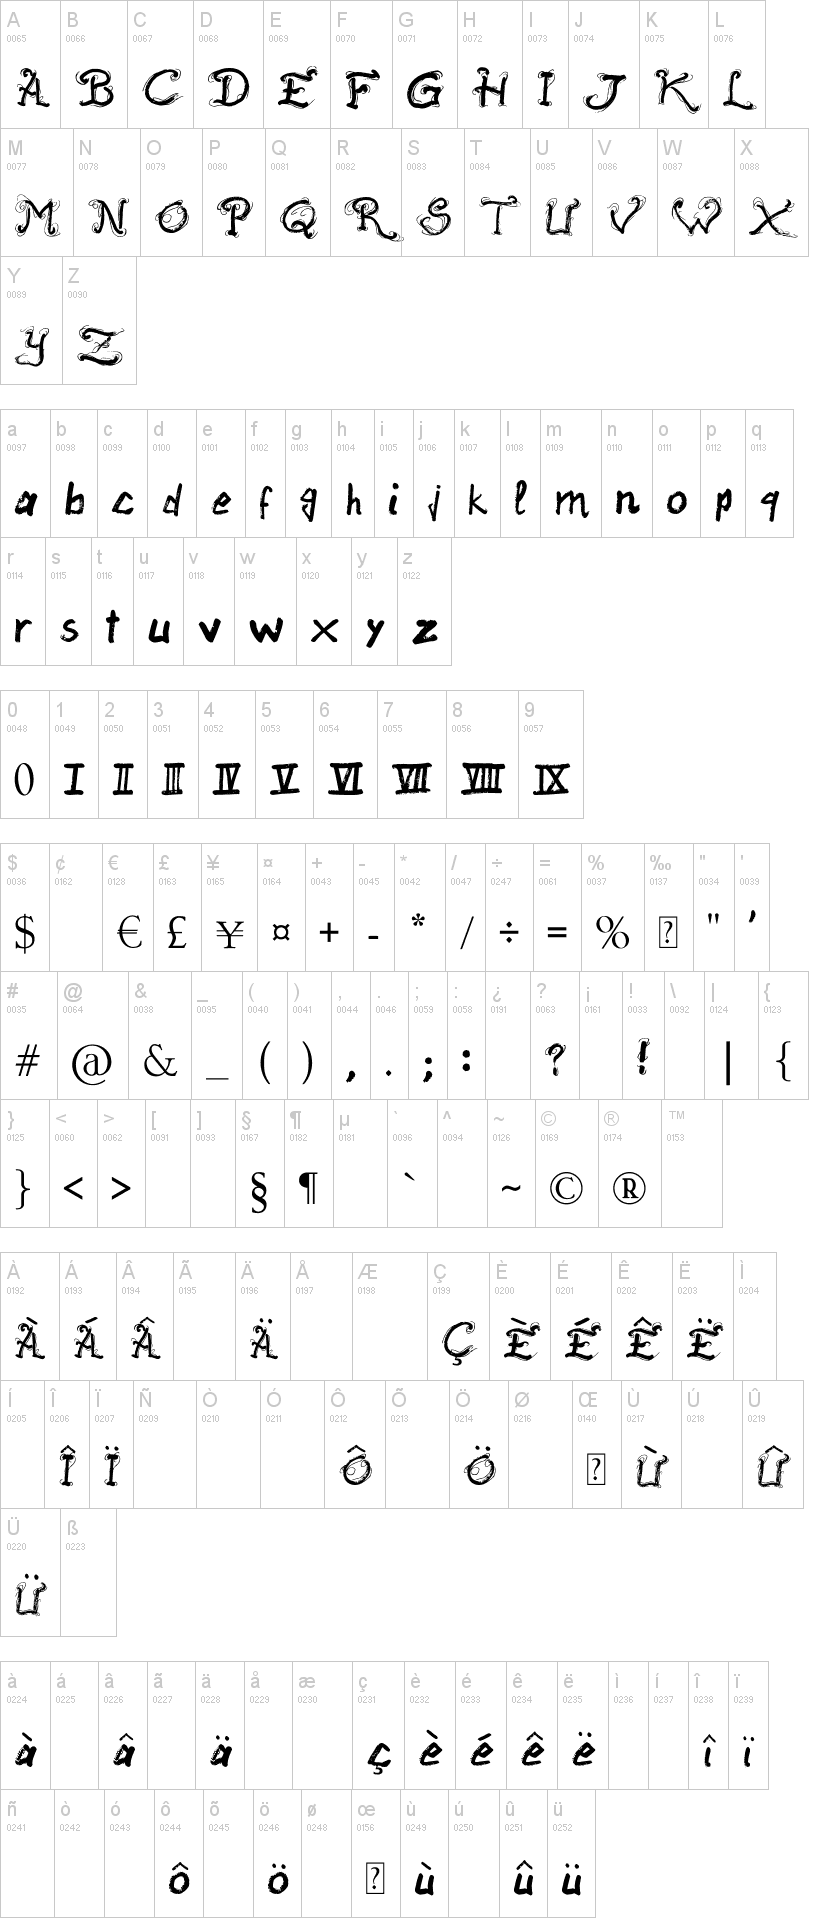 Raslani Ancient Script